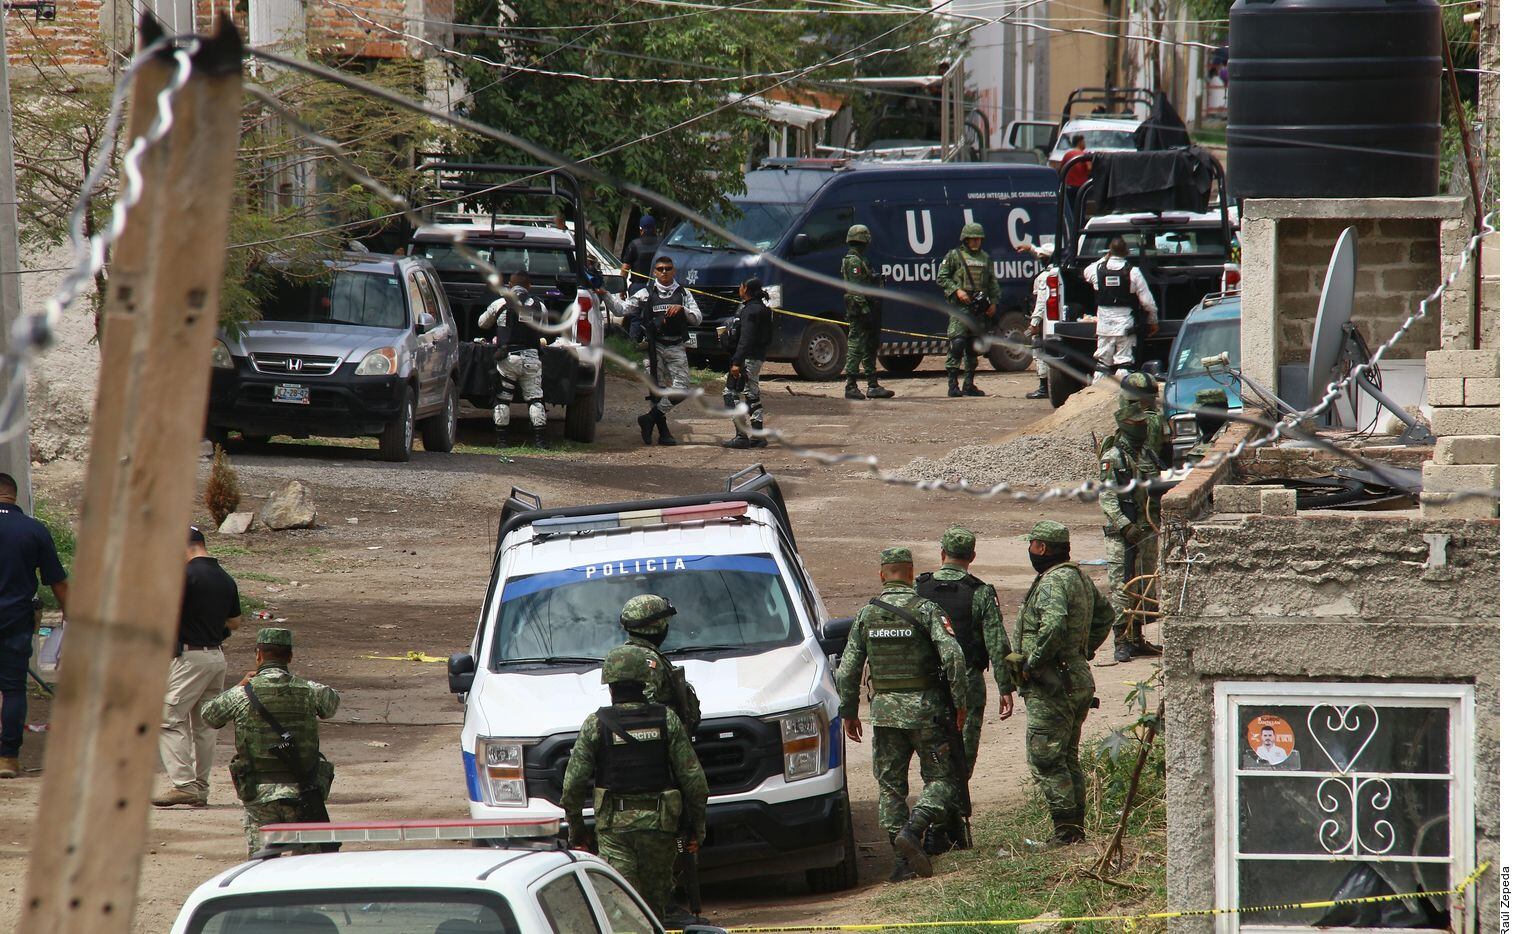 Reina incertidumbre y miedo en El Salto, Jalisco
El enfrentamiento del miércoles dejó el...